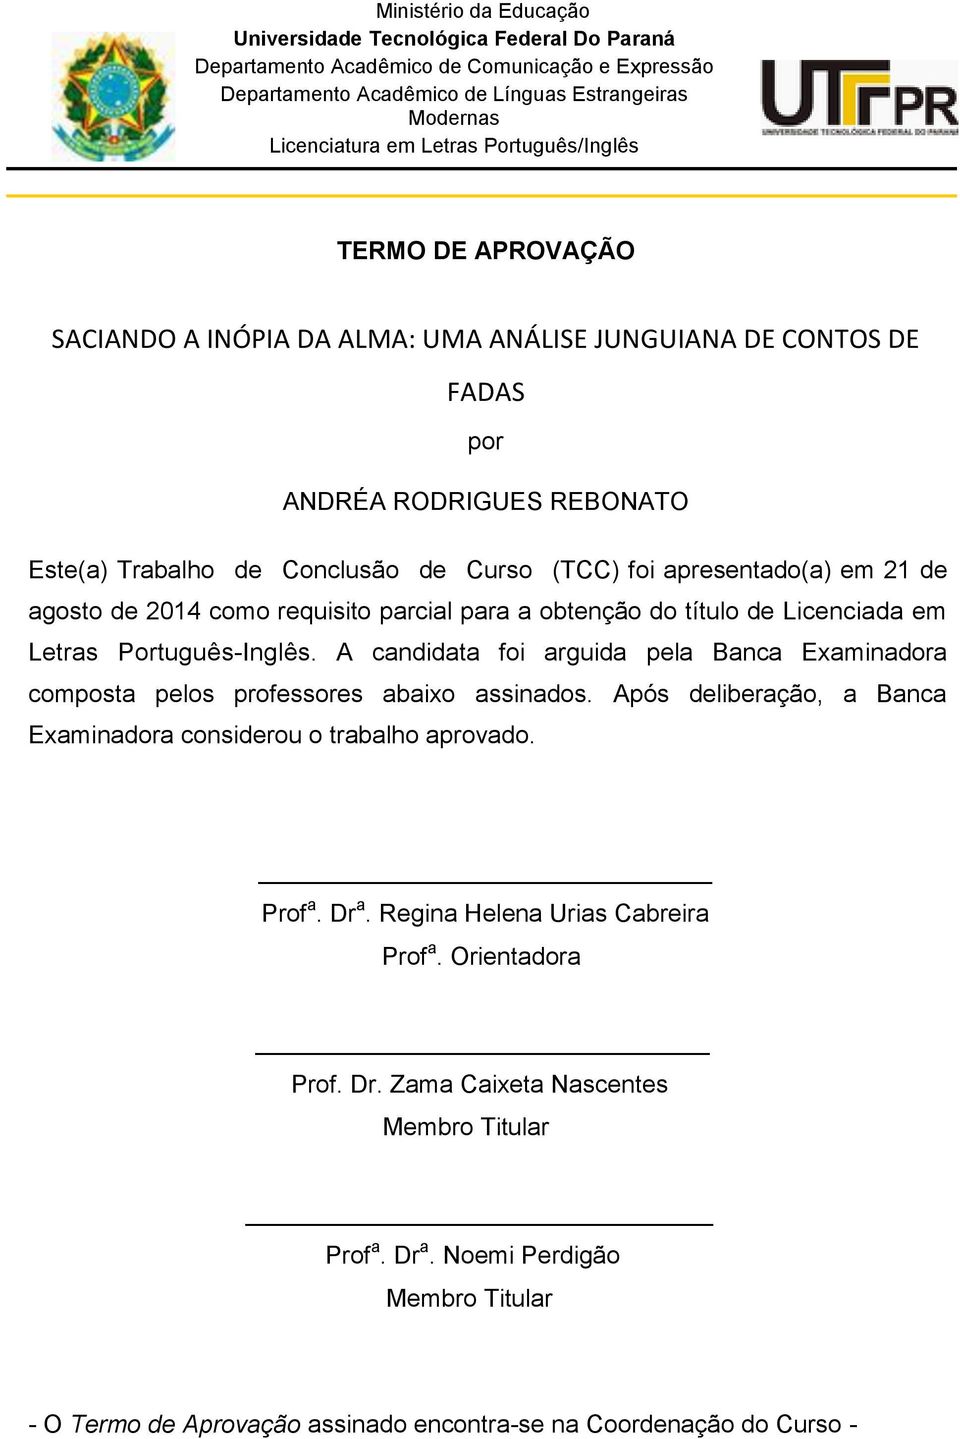 em 21 de agosto de 2014 como requisito parcial para a obtenção do título de Licenciada em Letras Português-Inglês.